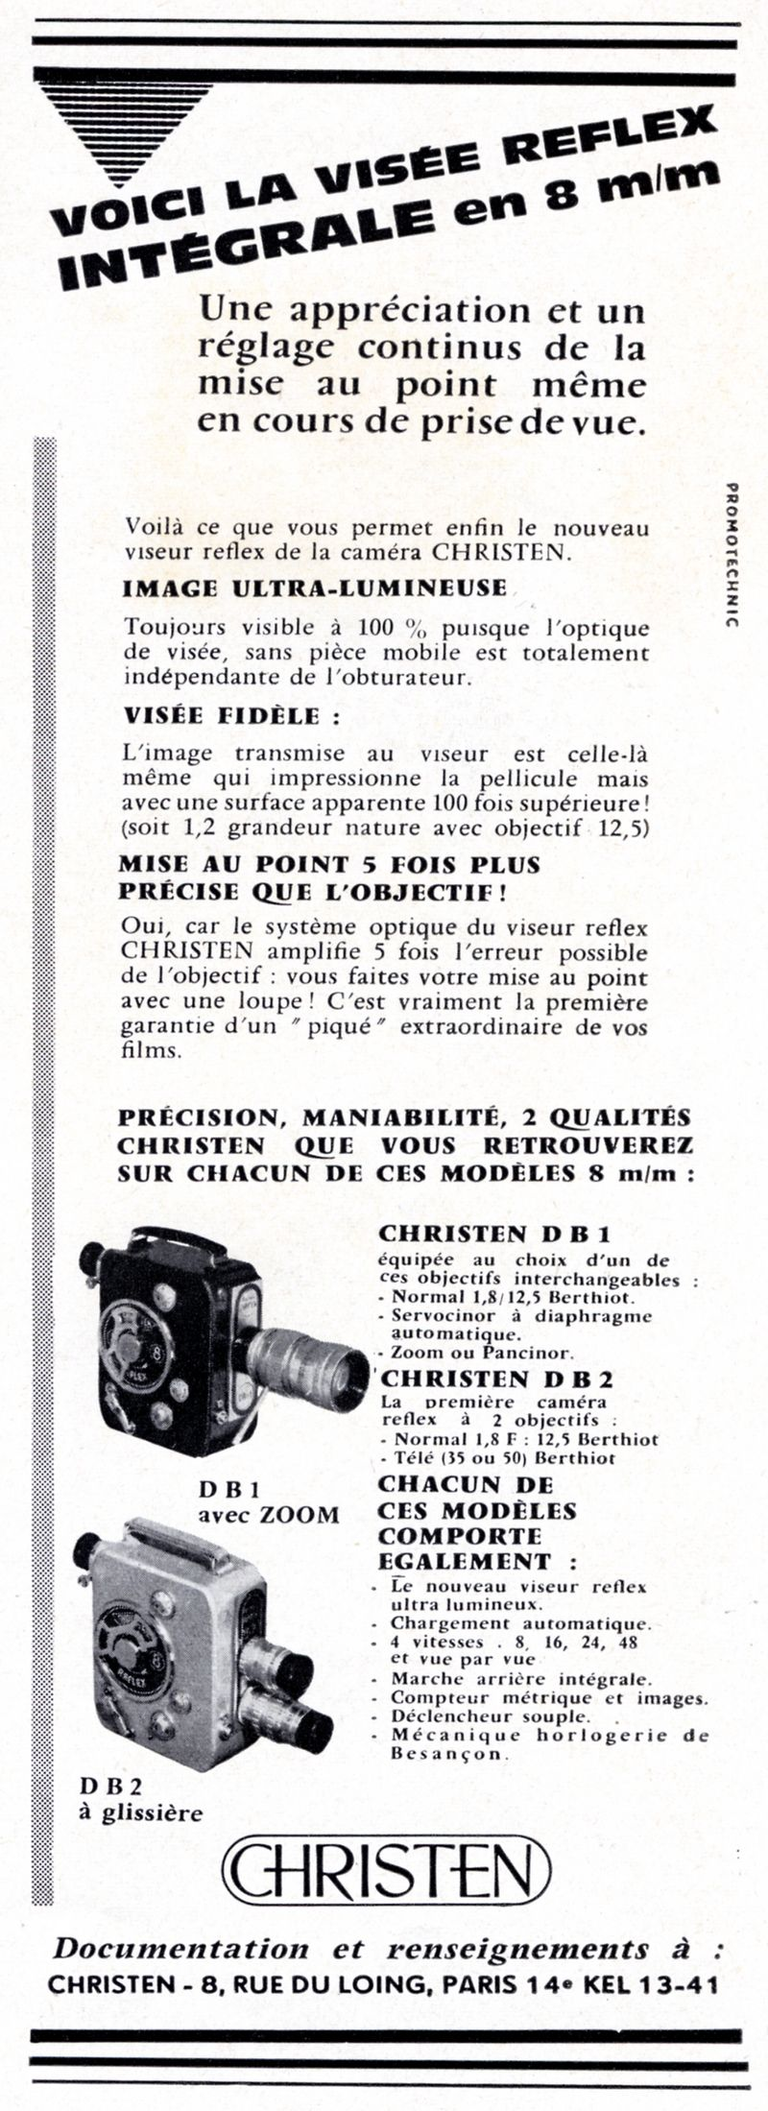 Christen - caméra Christen DB1 8 mm, Christen DB2 8 mm - 1960